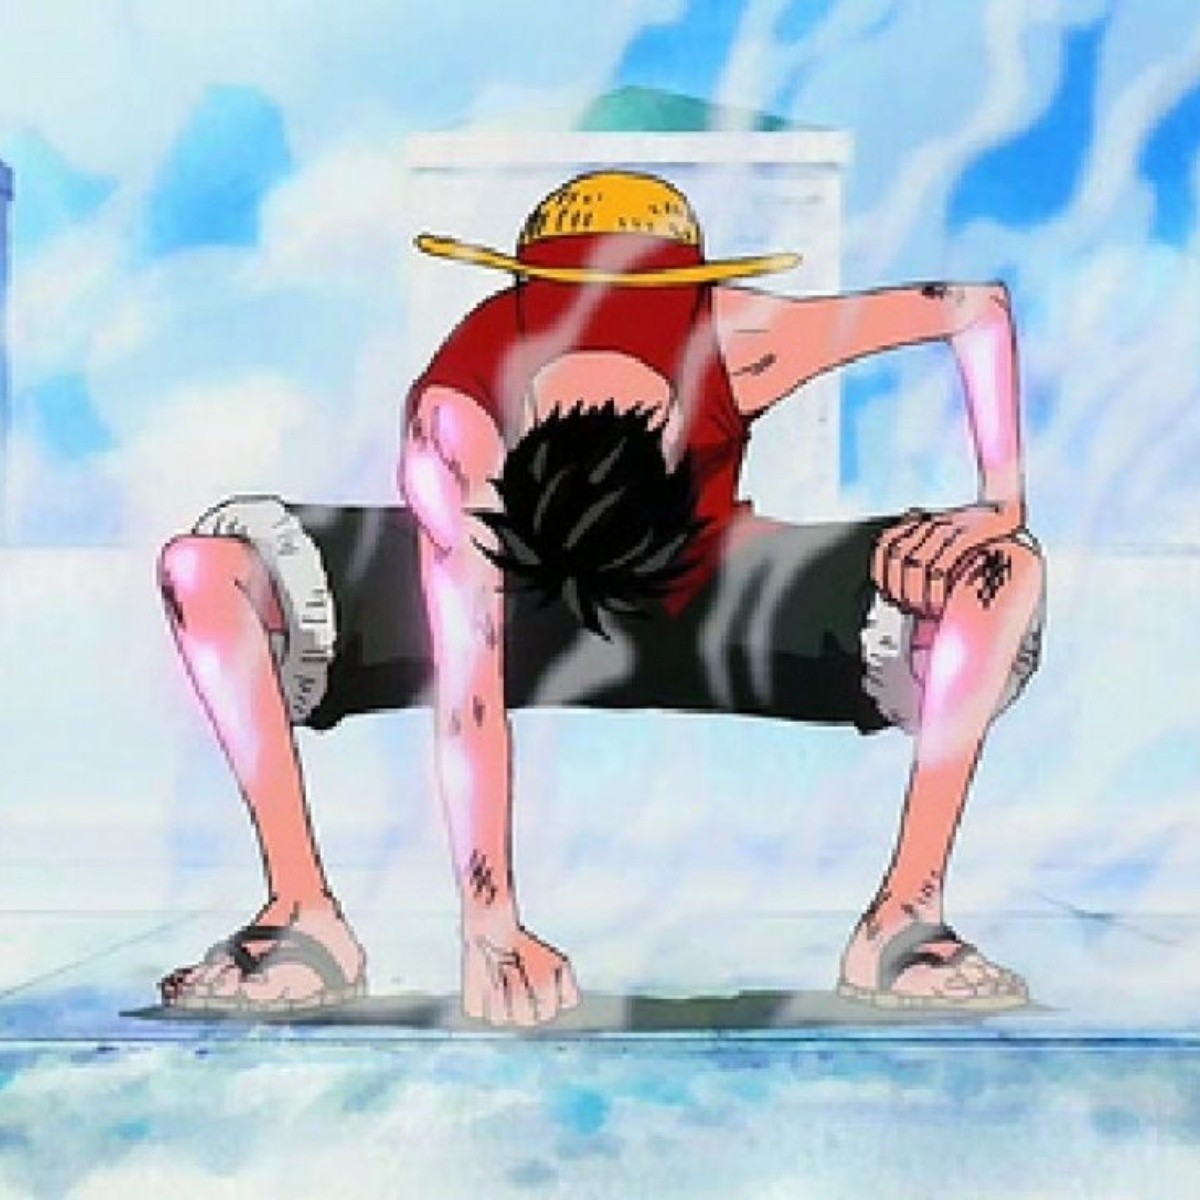 Hãy khám phá bức ảnh liên quan đến One Piece Gear 2 và khám phá sức mạnh kinh hoàng của Luffy. Chế độ này giúp Luffy đánh bại những kẻ ác một cách nhanh chóng và dễ dàng hơn bao giờ hết.